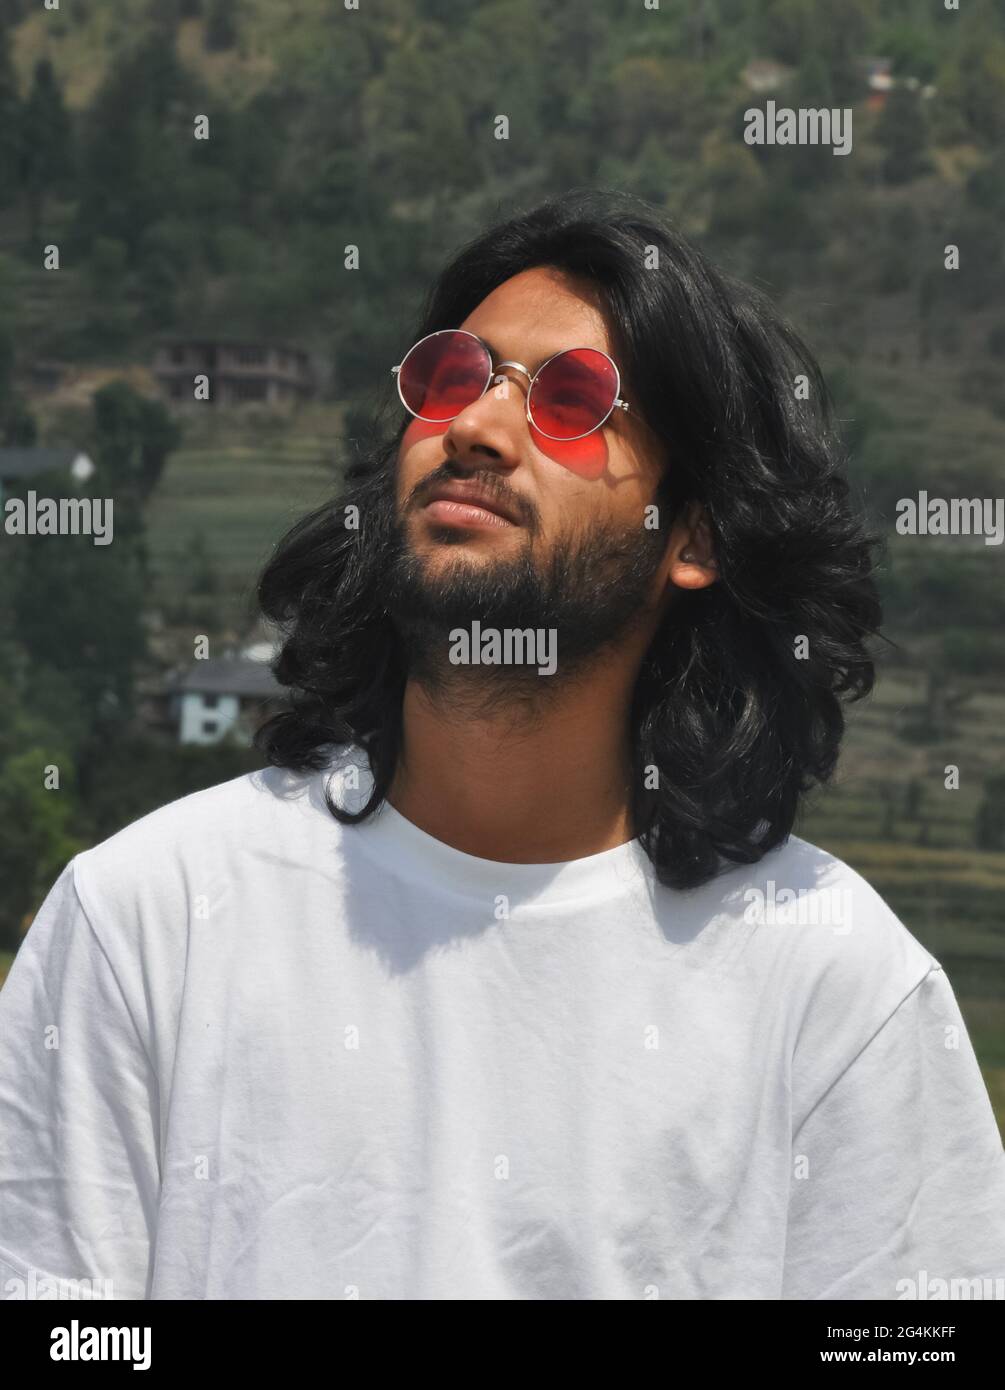 Portrait d'un jeune indien aux cheveux longs et beaux portant un verre de soleil avec un beau barbu debout dehors avec un t-shirt blanc Banque D'Images